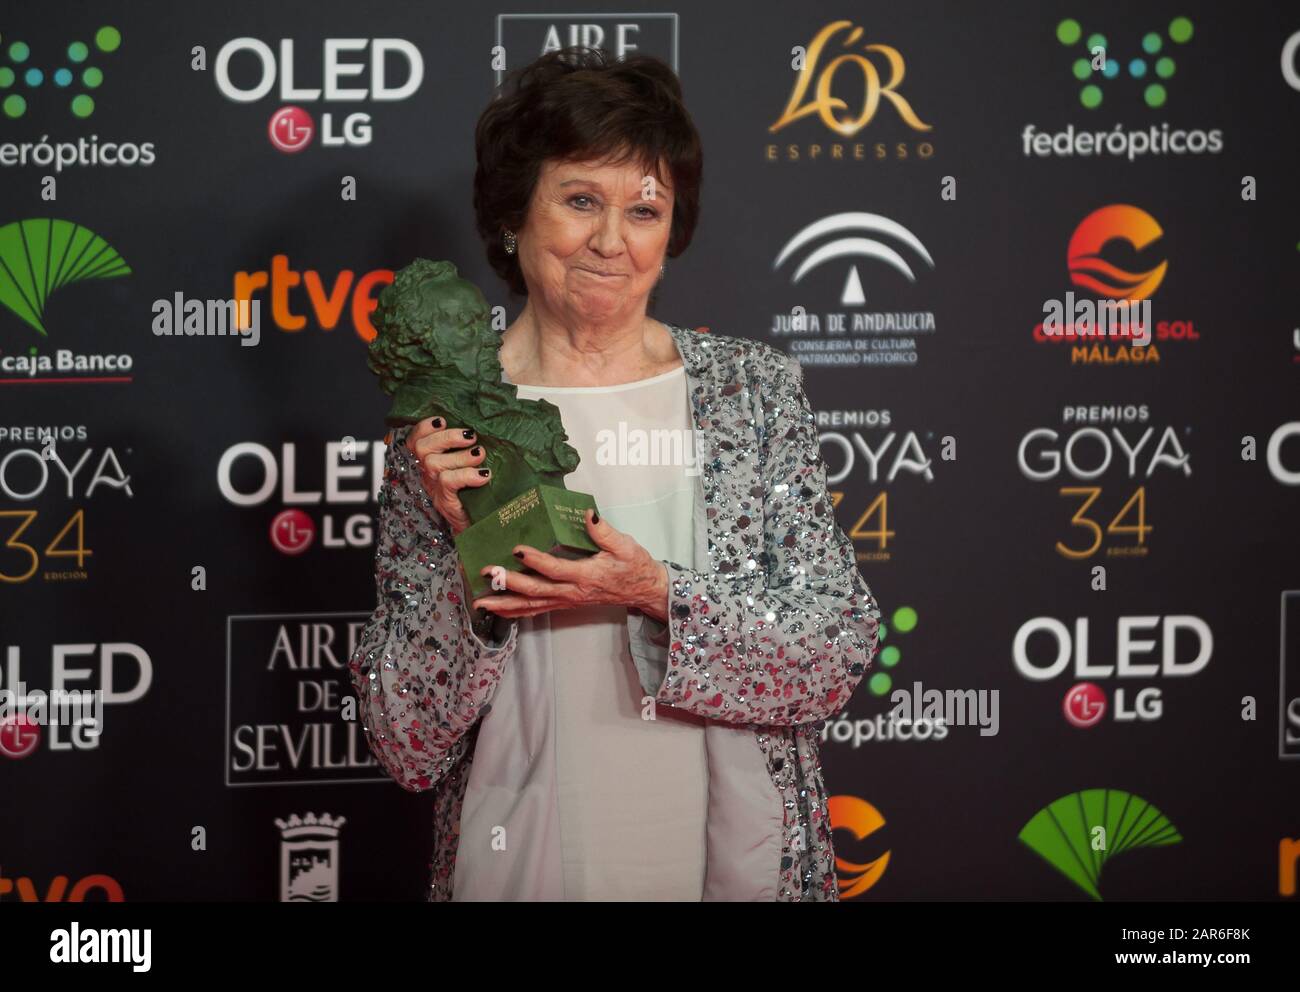 L'actrice espagnole Julieta Serrano pose avec le prix Goya pour la meilleure actrice de soutien sur le rôle dans 'Dilor y Gloria' (Pain et gloire) lors d'une séance photo de la 34ème édition de la cérémonie des Prix Goya de l'Académie du film espagnol, au palais de sport Jose Maria Martin Carpena. Banque D'Images